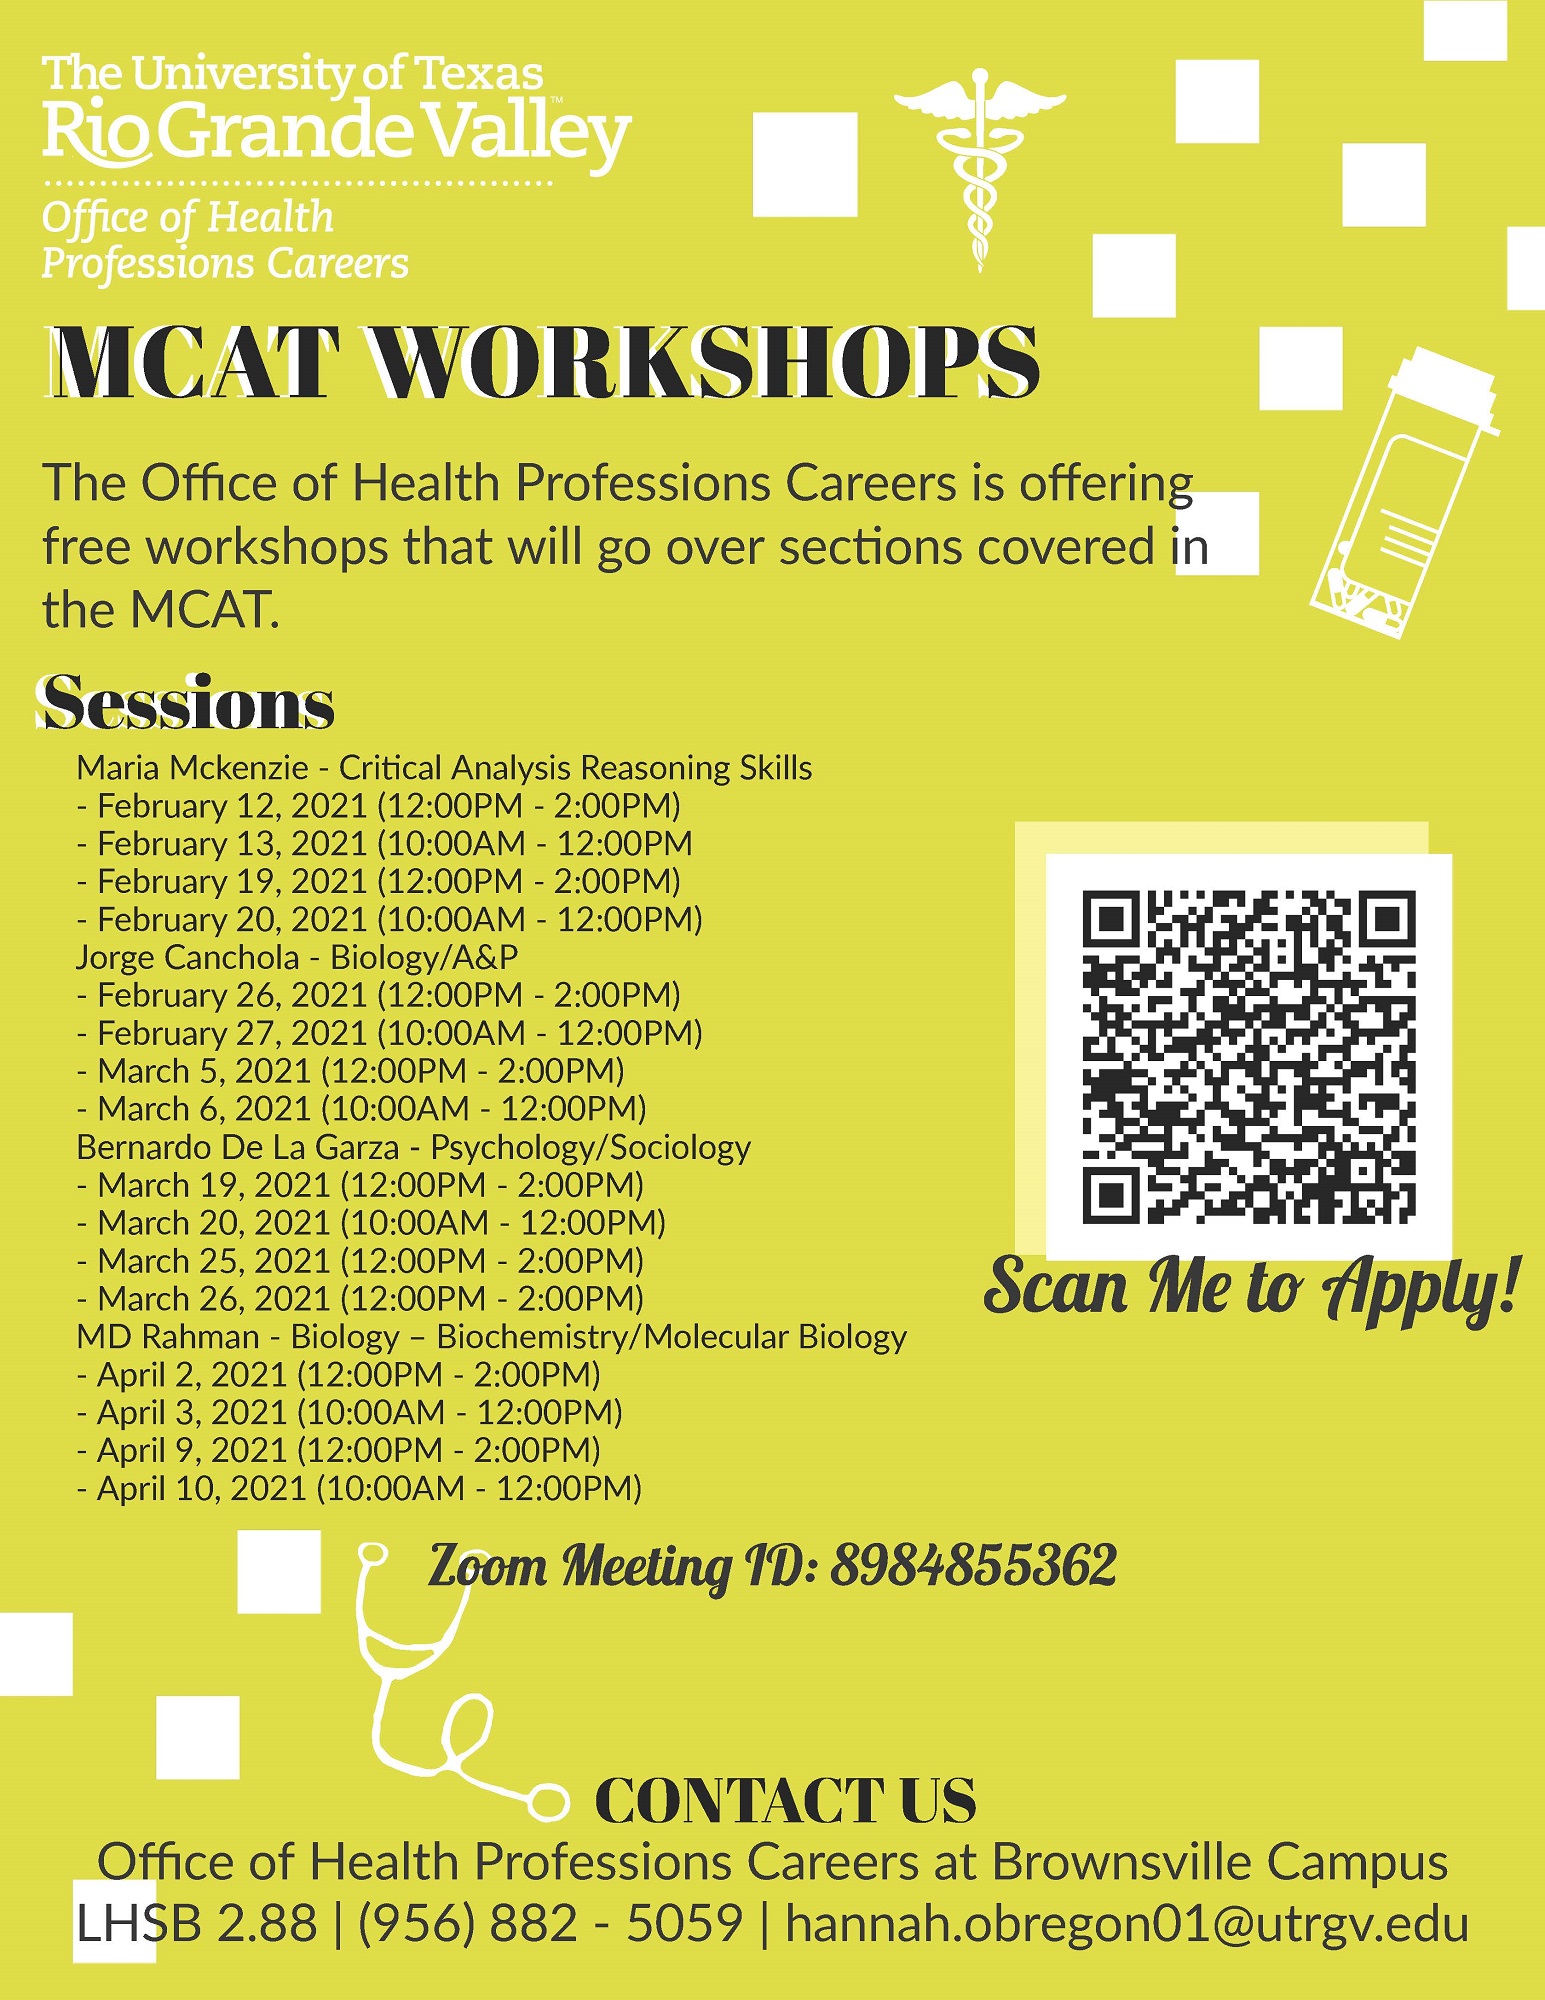 MCAT workshops